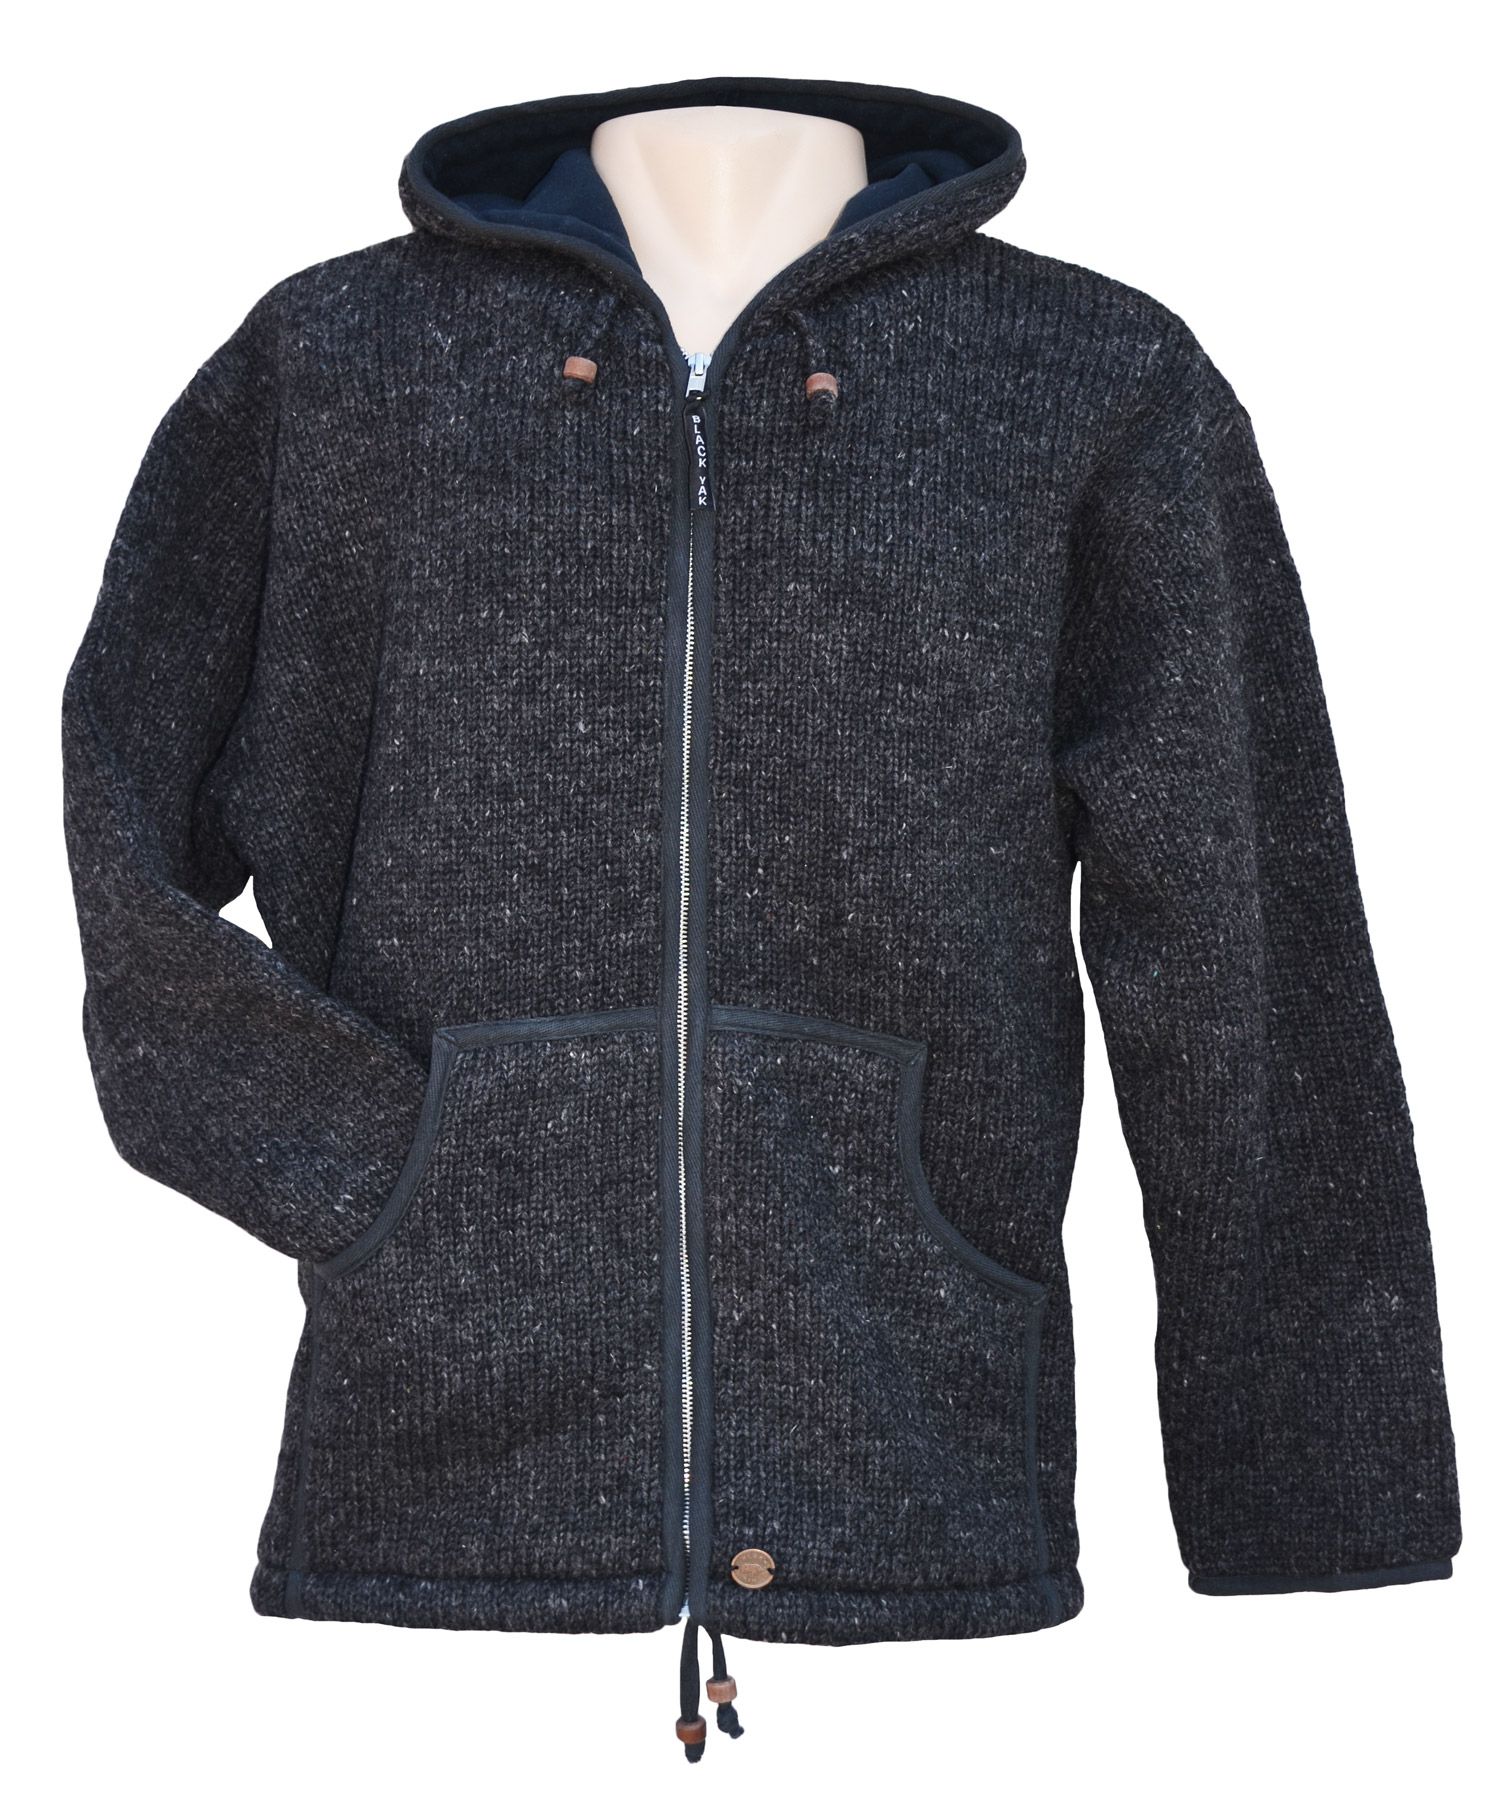 Fleece lined - pure wool - hooded jacket - Charcoal | Black Yak